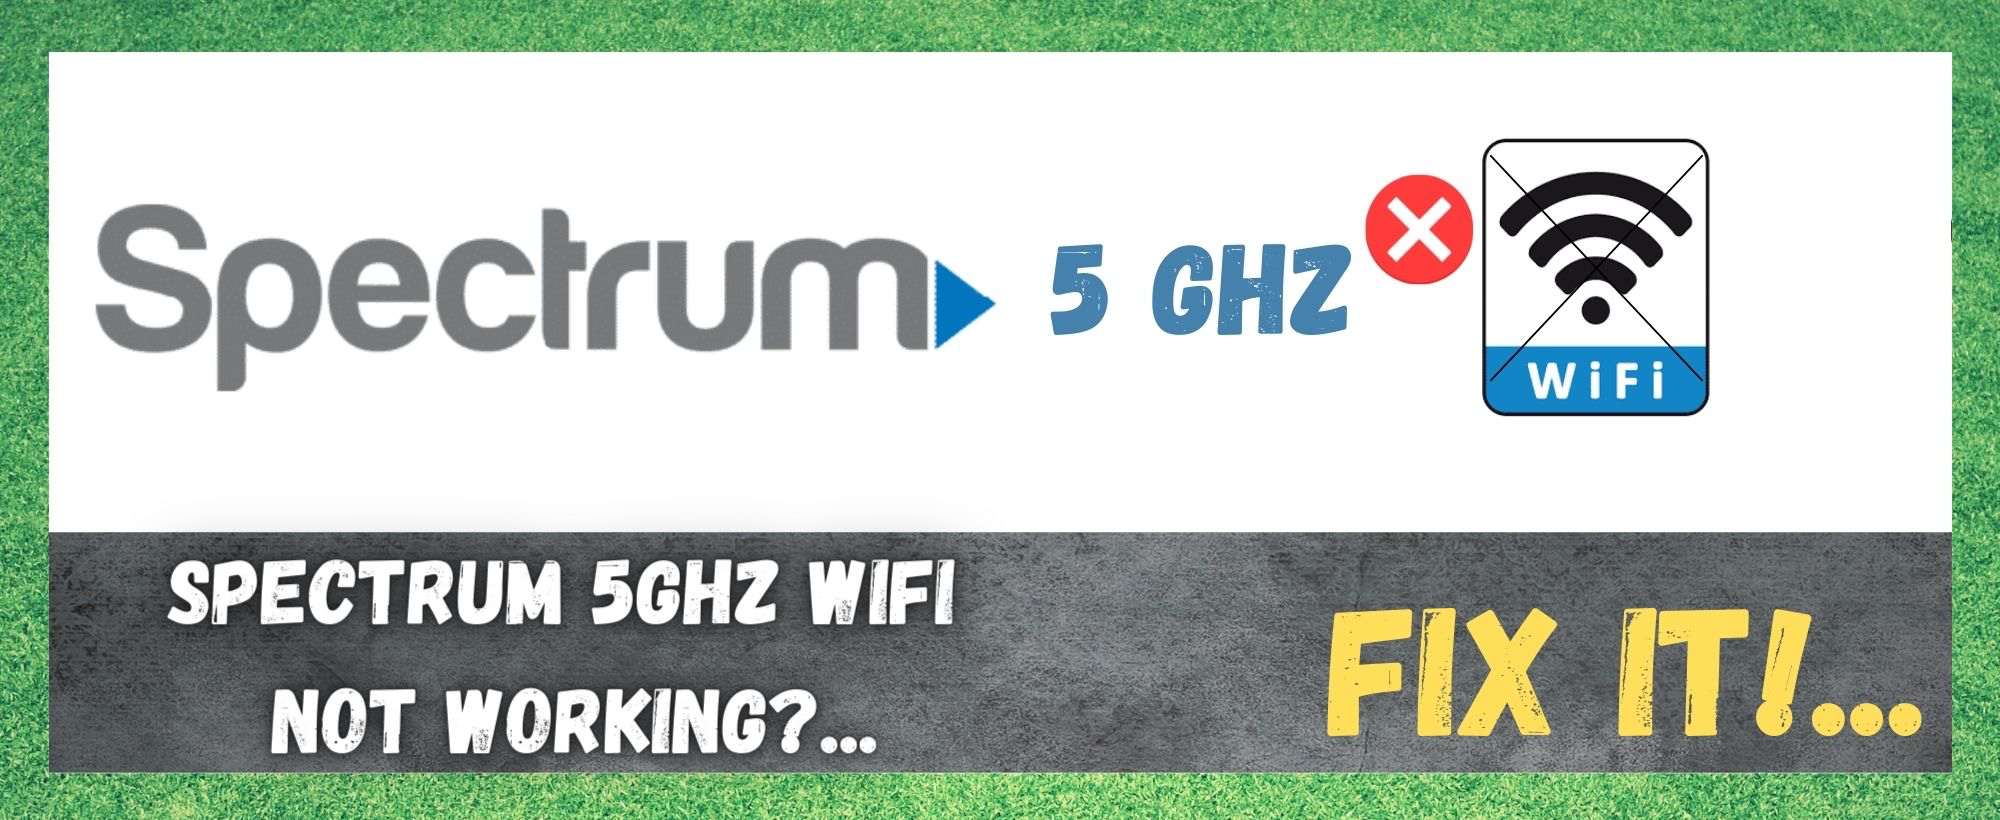 4 maneras de arreglar el problema del WiFi Spectrum 5GHz